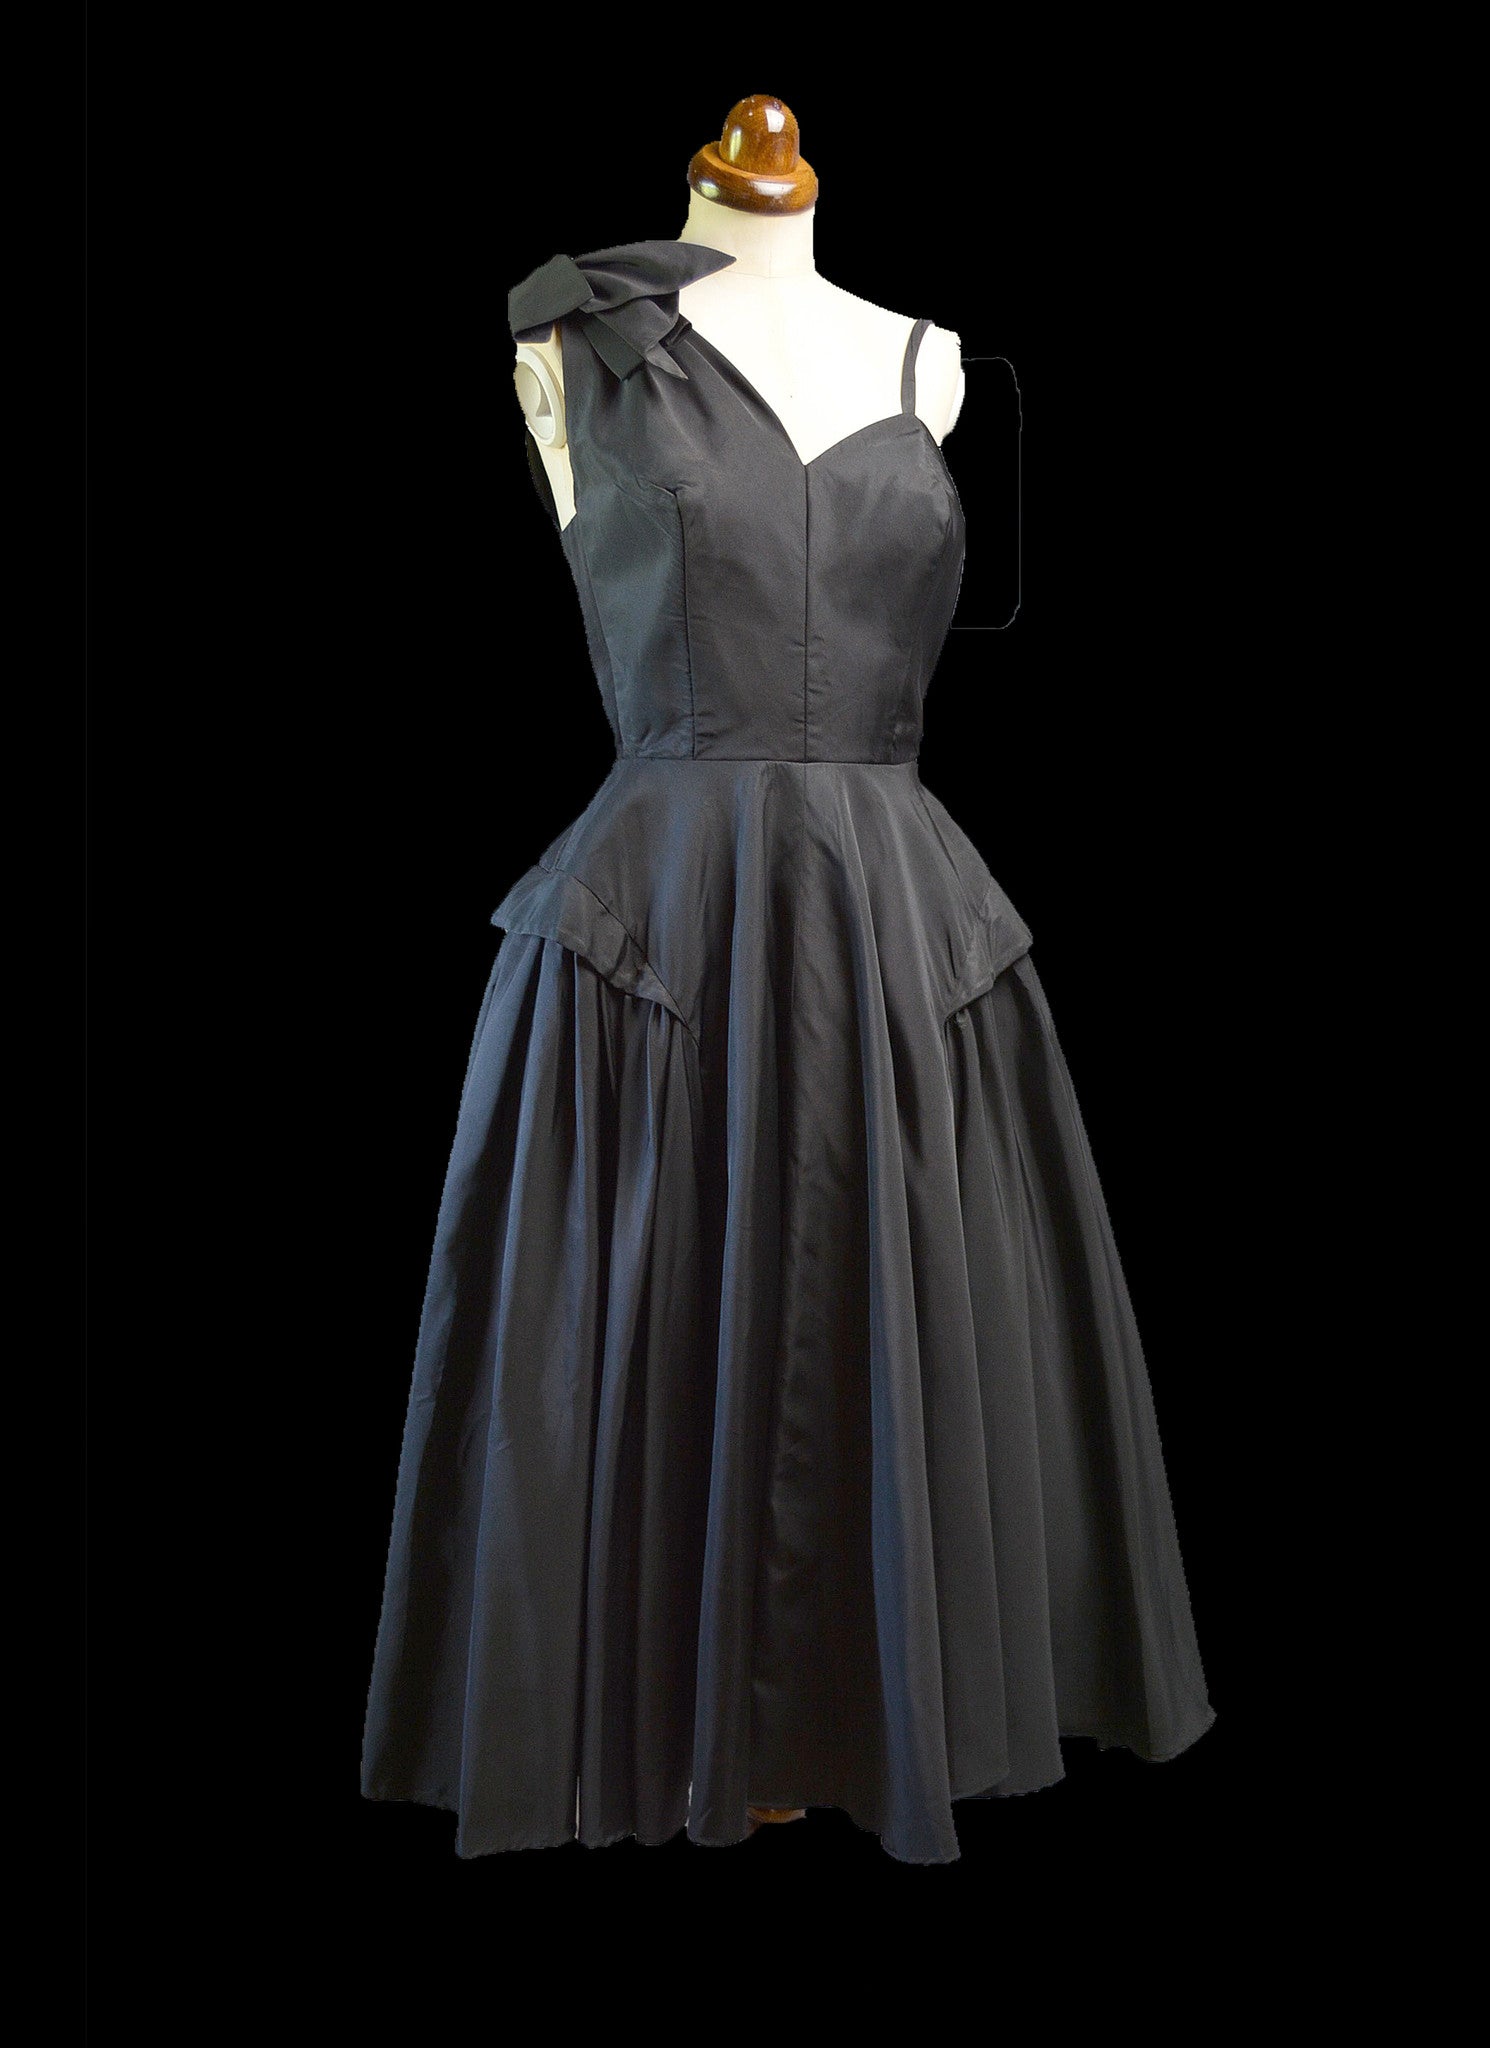 Vintage 1950s Black Gabardine New Look Dress